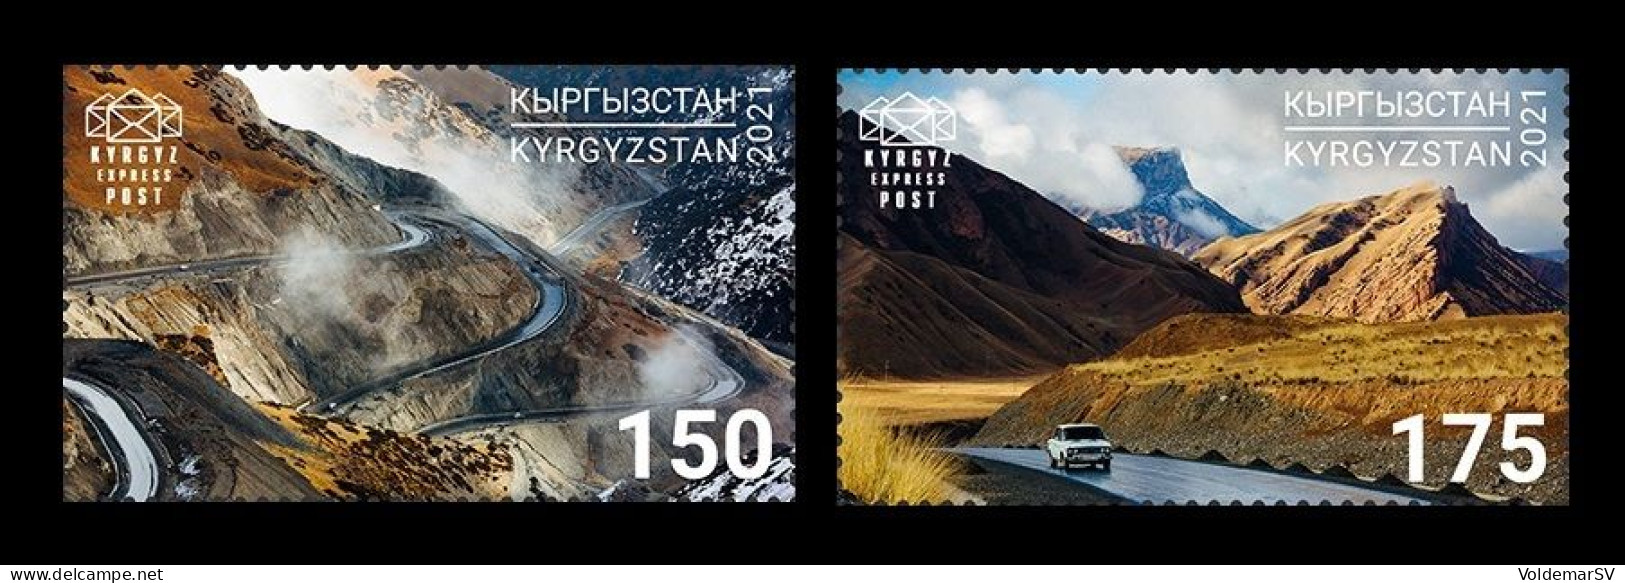 Kyrgyzstan (KEP) 2021 Mih. 181/82 Pamir Highway. Automobiles. Mountains MNH ** - Kirghizstan